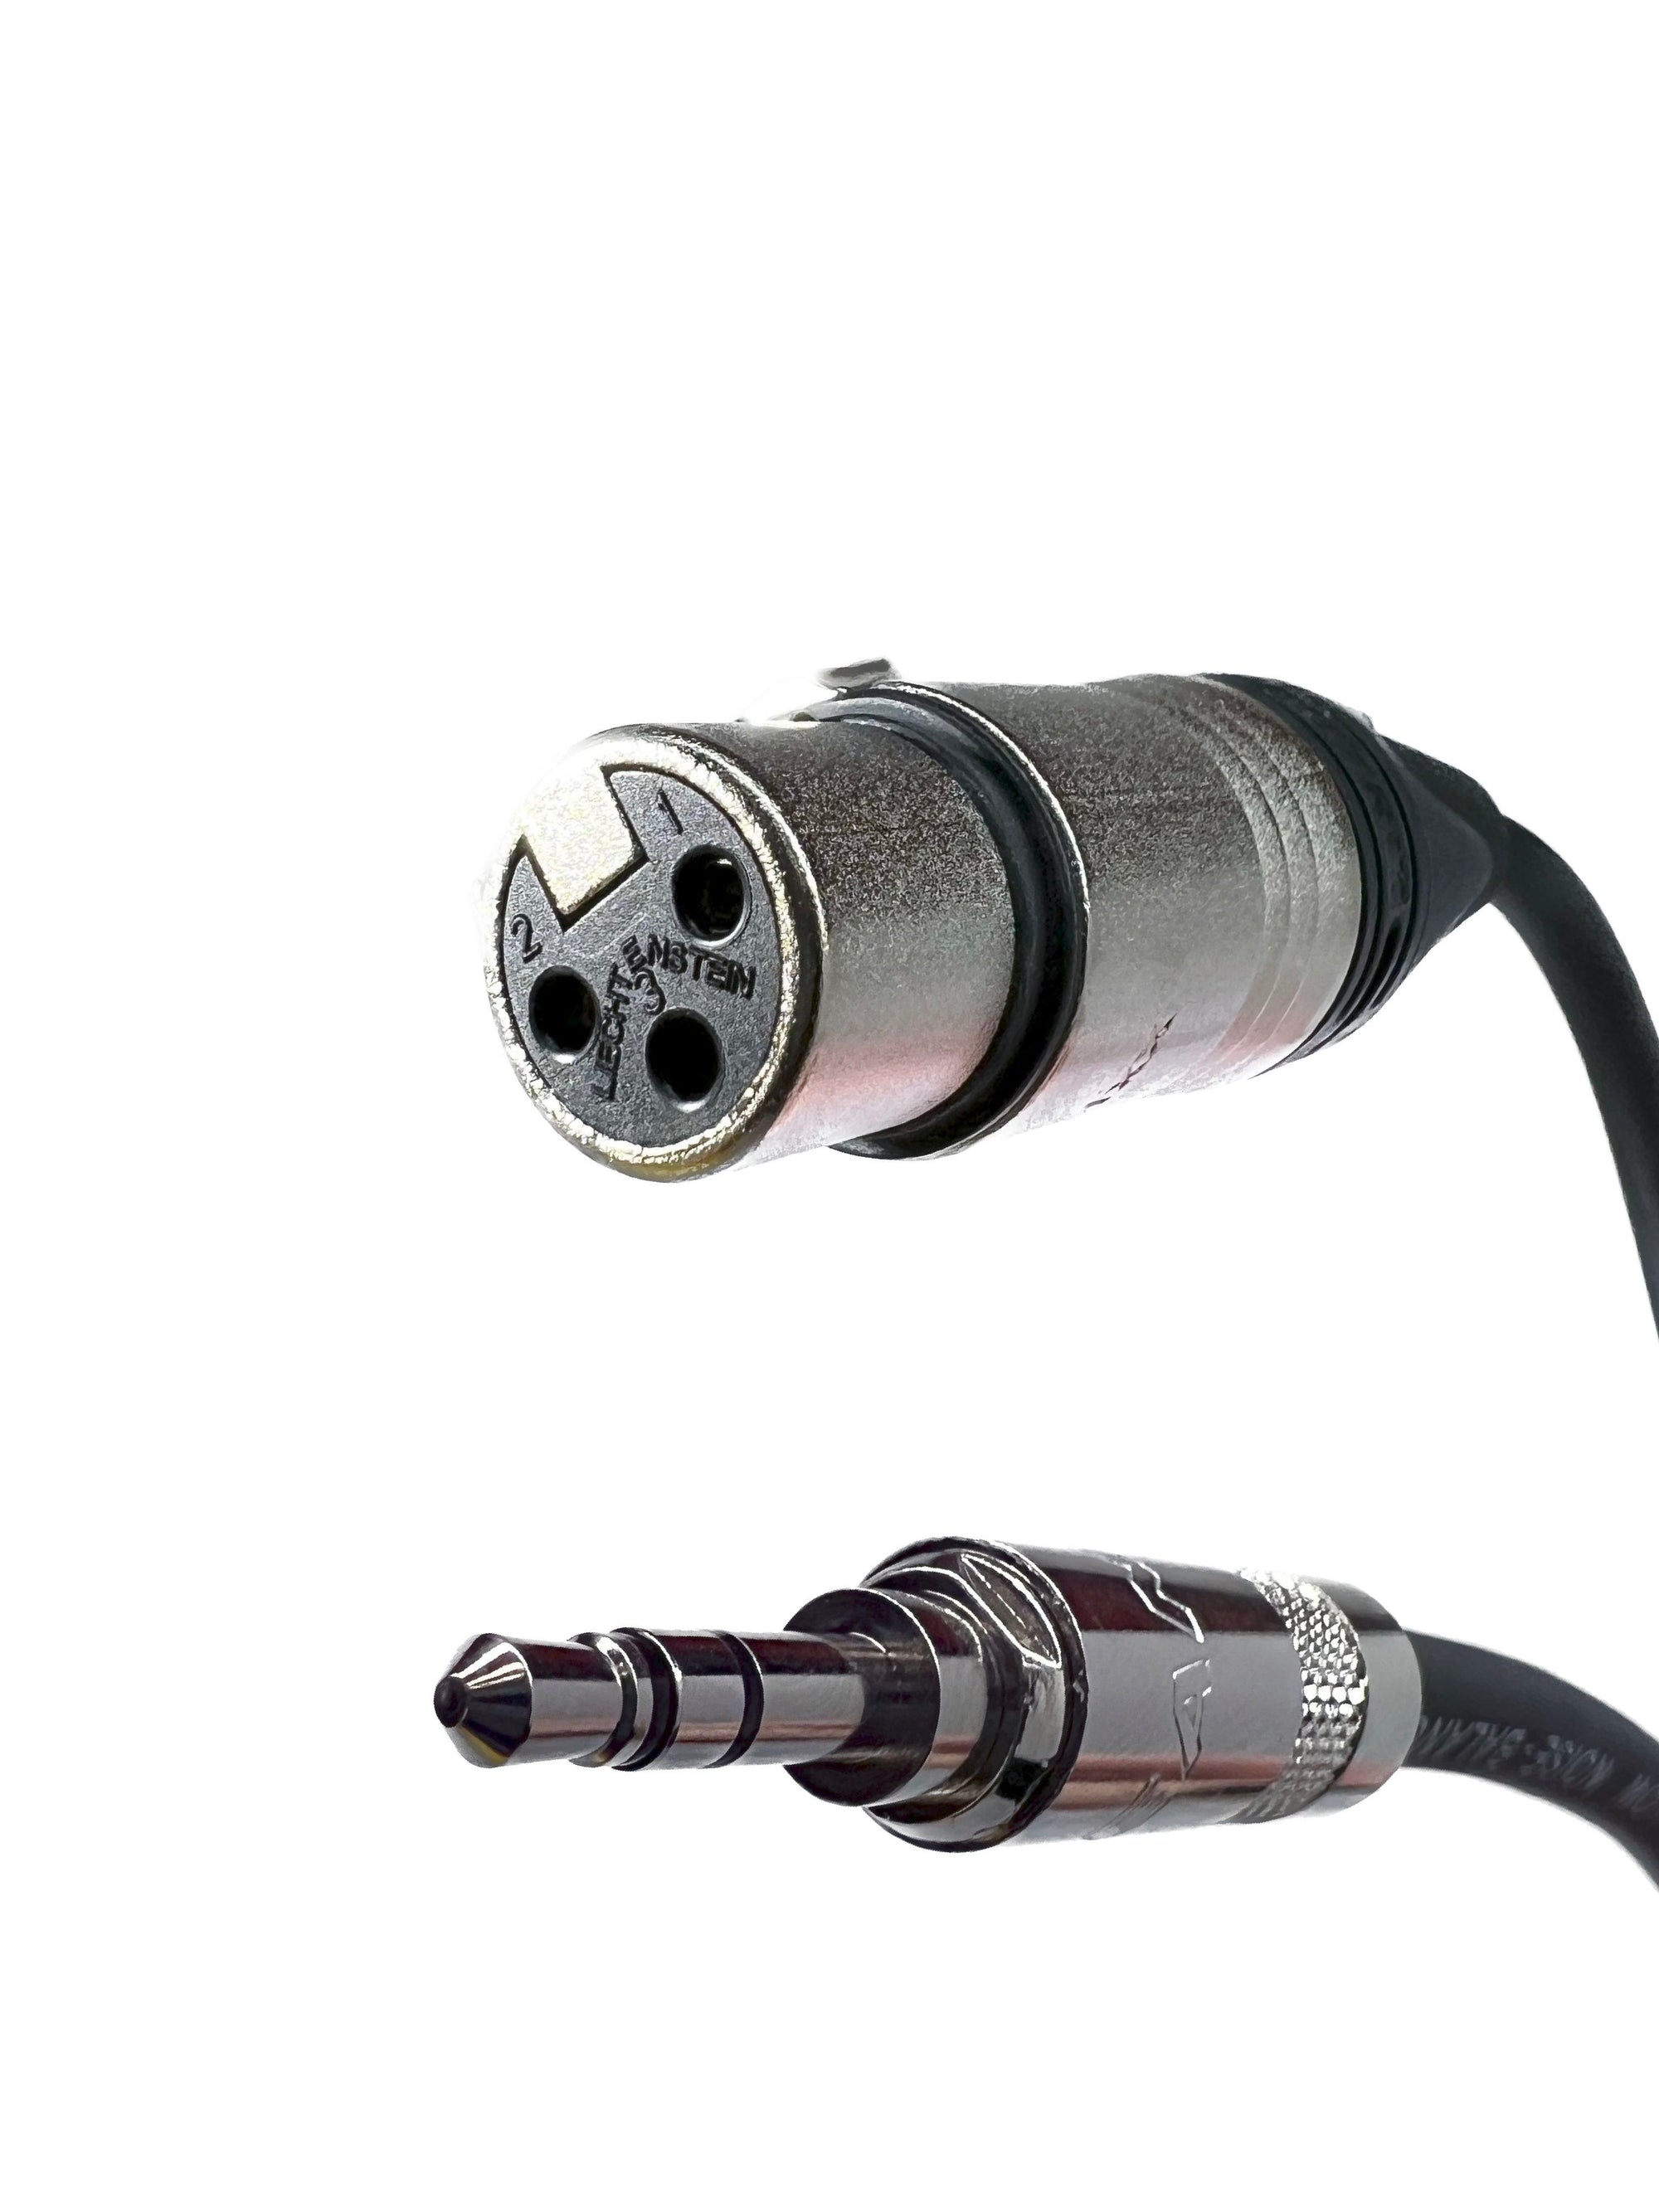 Câble AUX Audio Adaptateur 3.5mm Jack Male Plug USB 2.0 femelle